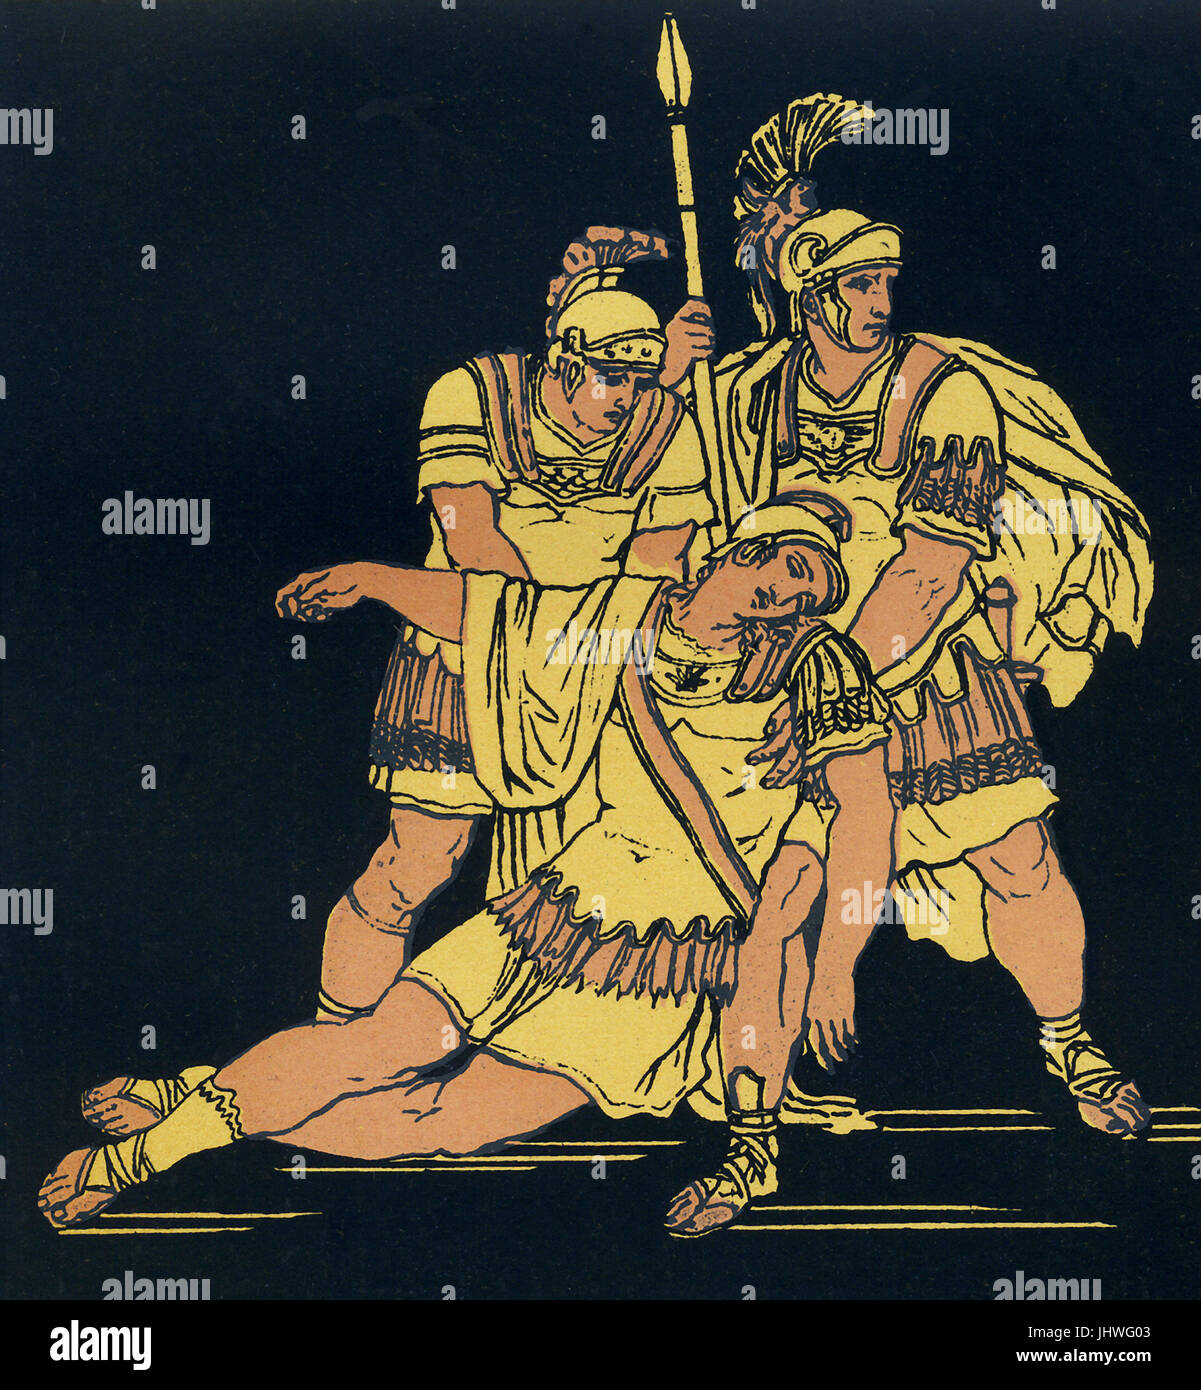 Lausus era il figlio del re etrusco Mezentius. Egli ha combattuto contro Enea e i suoi seguaci scampato Troy dopo i Greci conquistarono Troia e bruciato la città. Il racconto di questi guerrieri appare nell'Eneide di Virgilio. Dopo Enea Mezentius ferite in battaglia, Lausus proviene per la difesa di suo padre e di Enea poi colpisce entrambi. Questa illustrazione da circa 1900 mostra Lausus, essendo supportato dai suoi uomini come muore tra le loro braccia.. Foto Stock